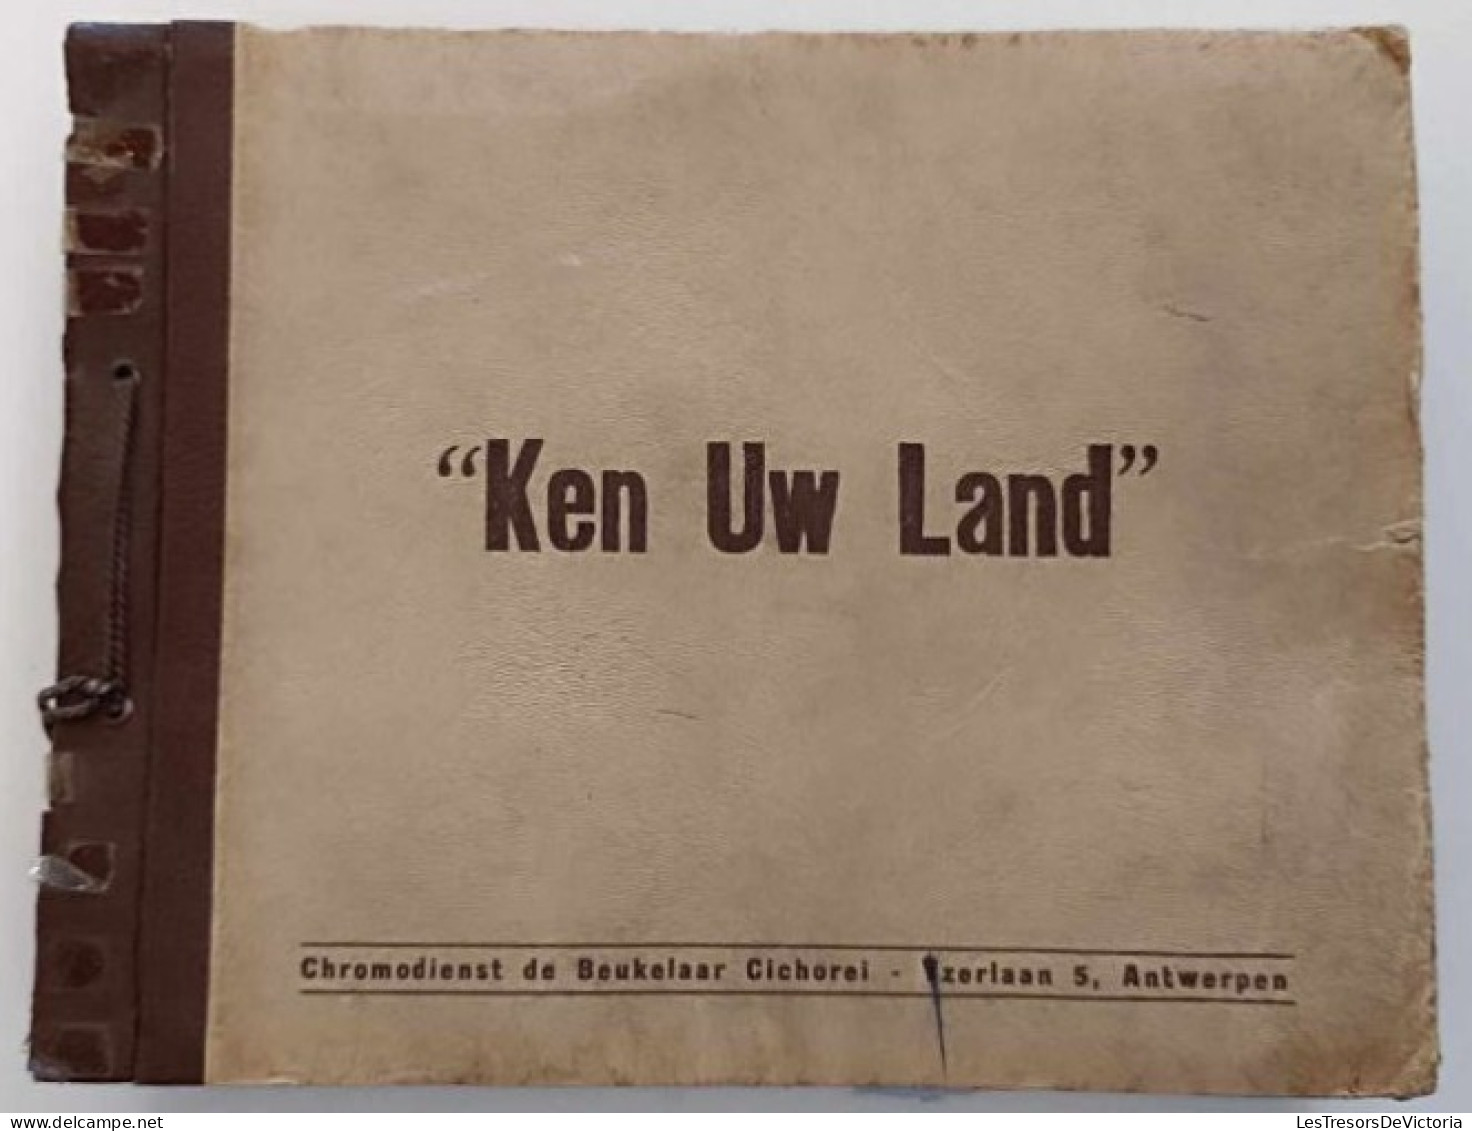 Chromos - Ken Uw Land - Chromodienst De Beukelaar Cichorei - Antwerpen - Livre De Chromos Sur La Belgique - Albums & Catalogues